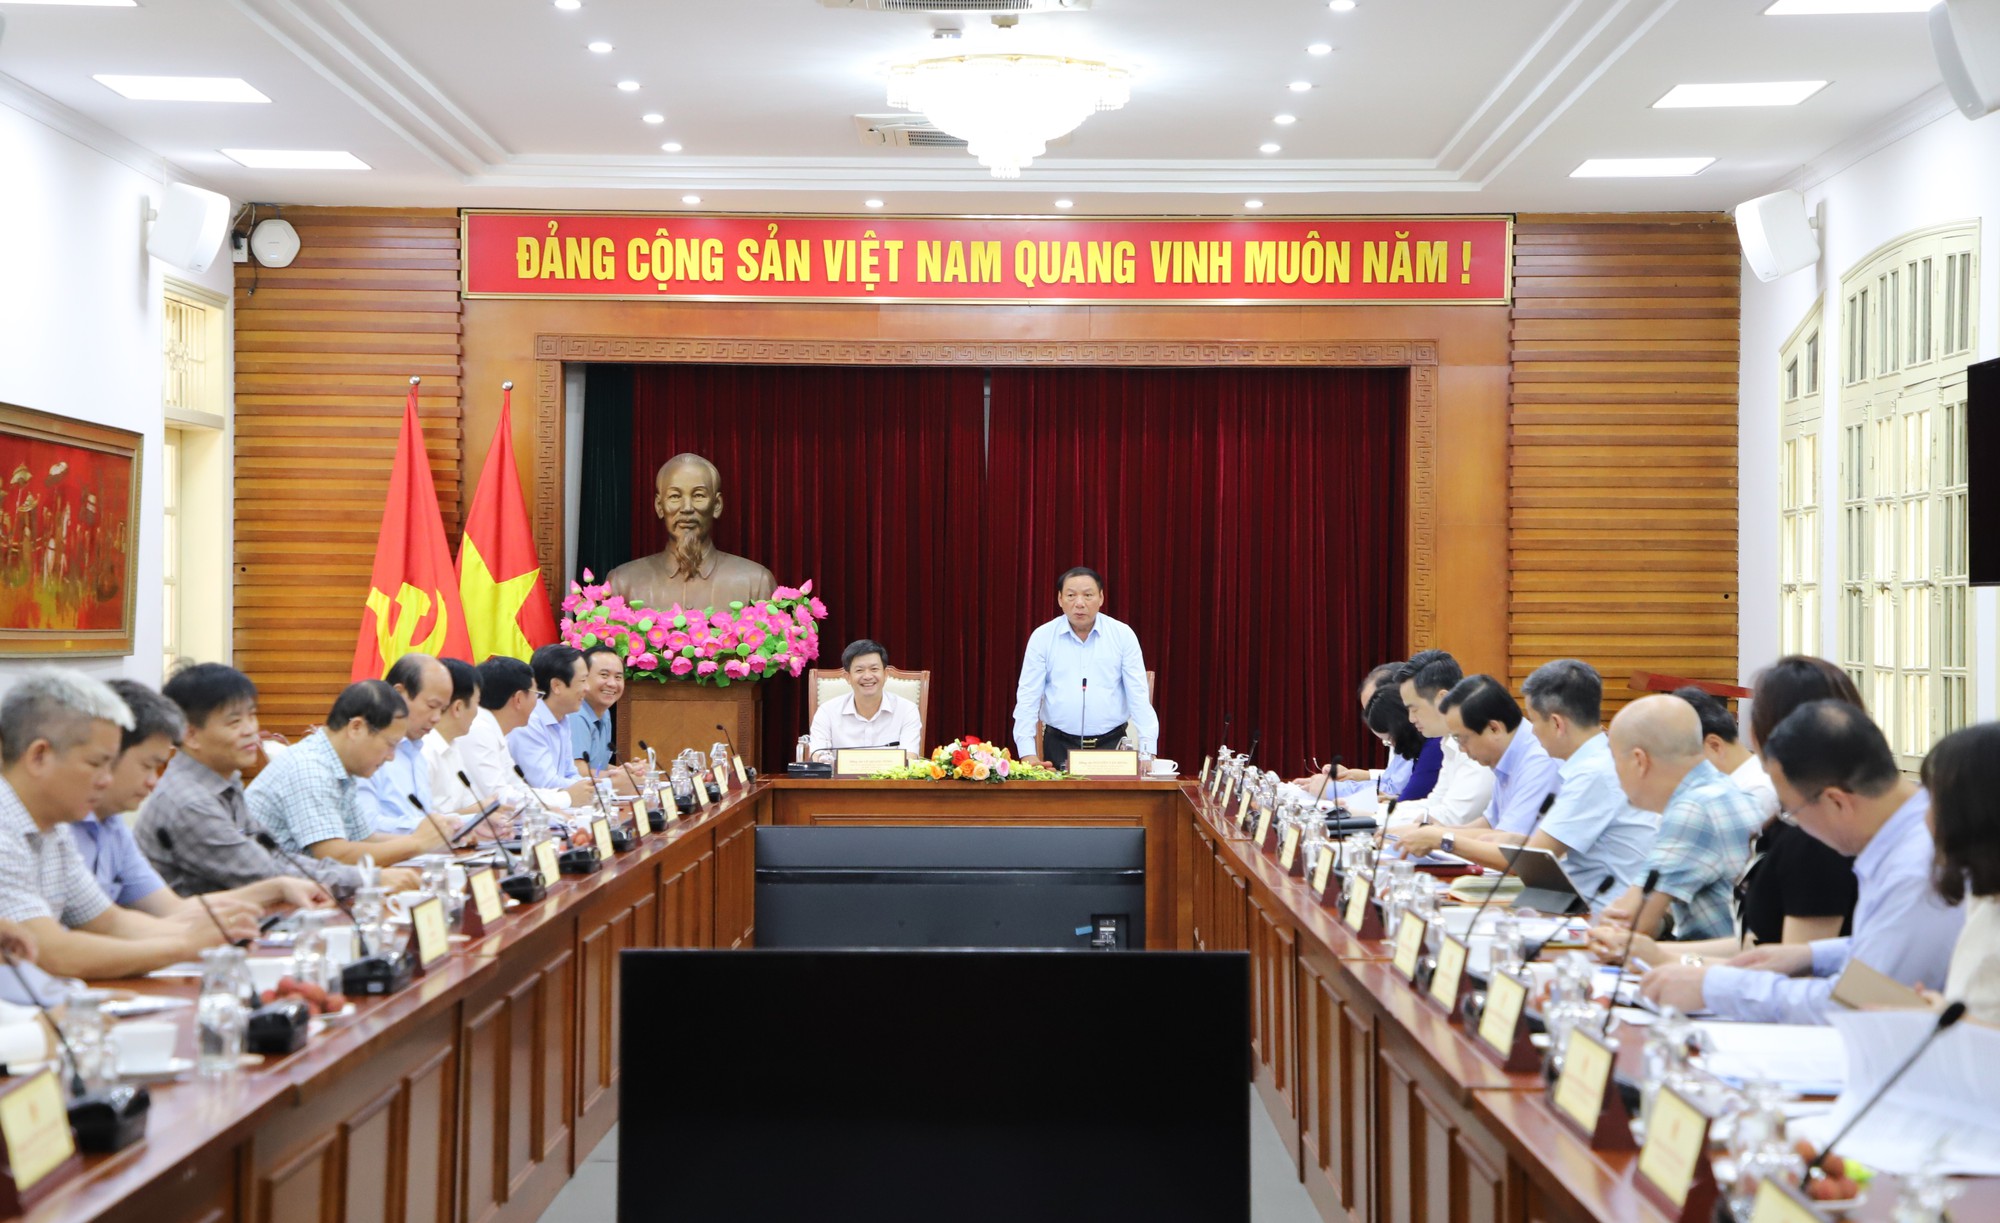 Bộ trưởng Nguyễn Văn Hùng: Nhân lên sức mạnh từ văn hoá và bằng văn hoá để phát triển tỉnh Quảng Trị - Ảnh 1.